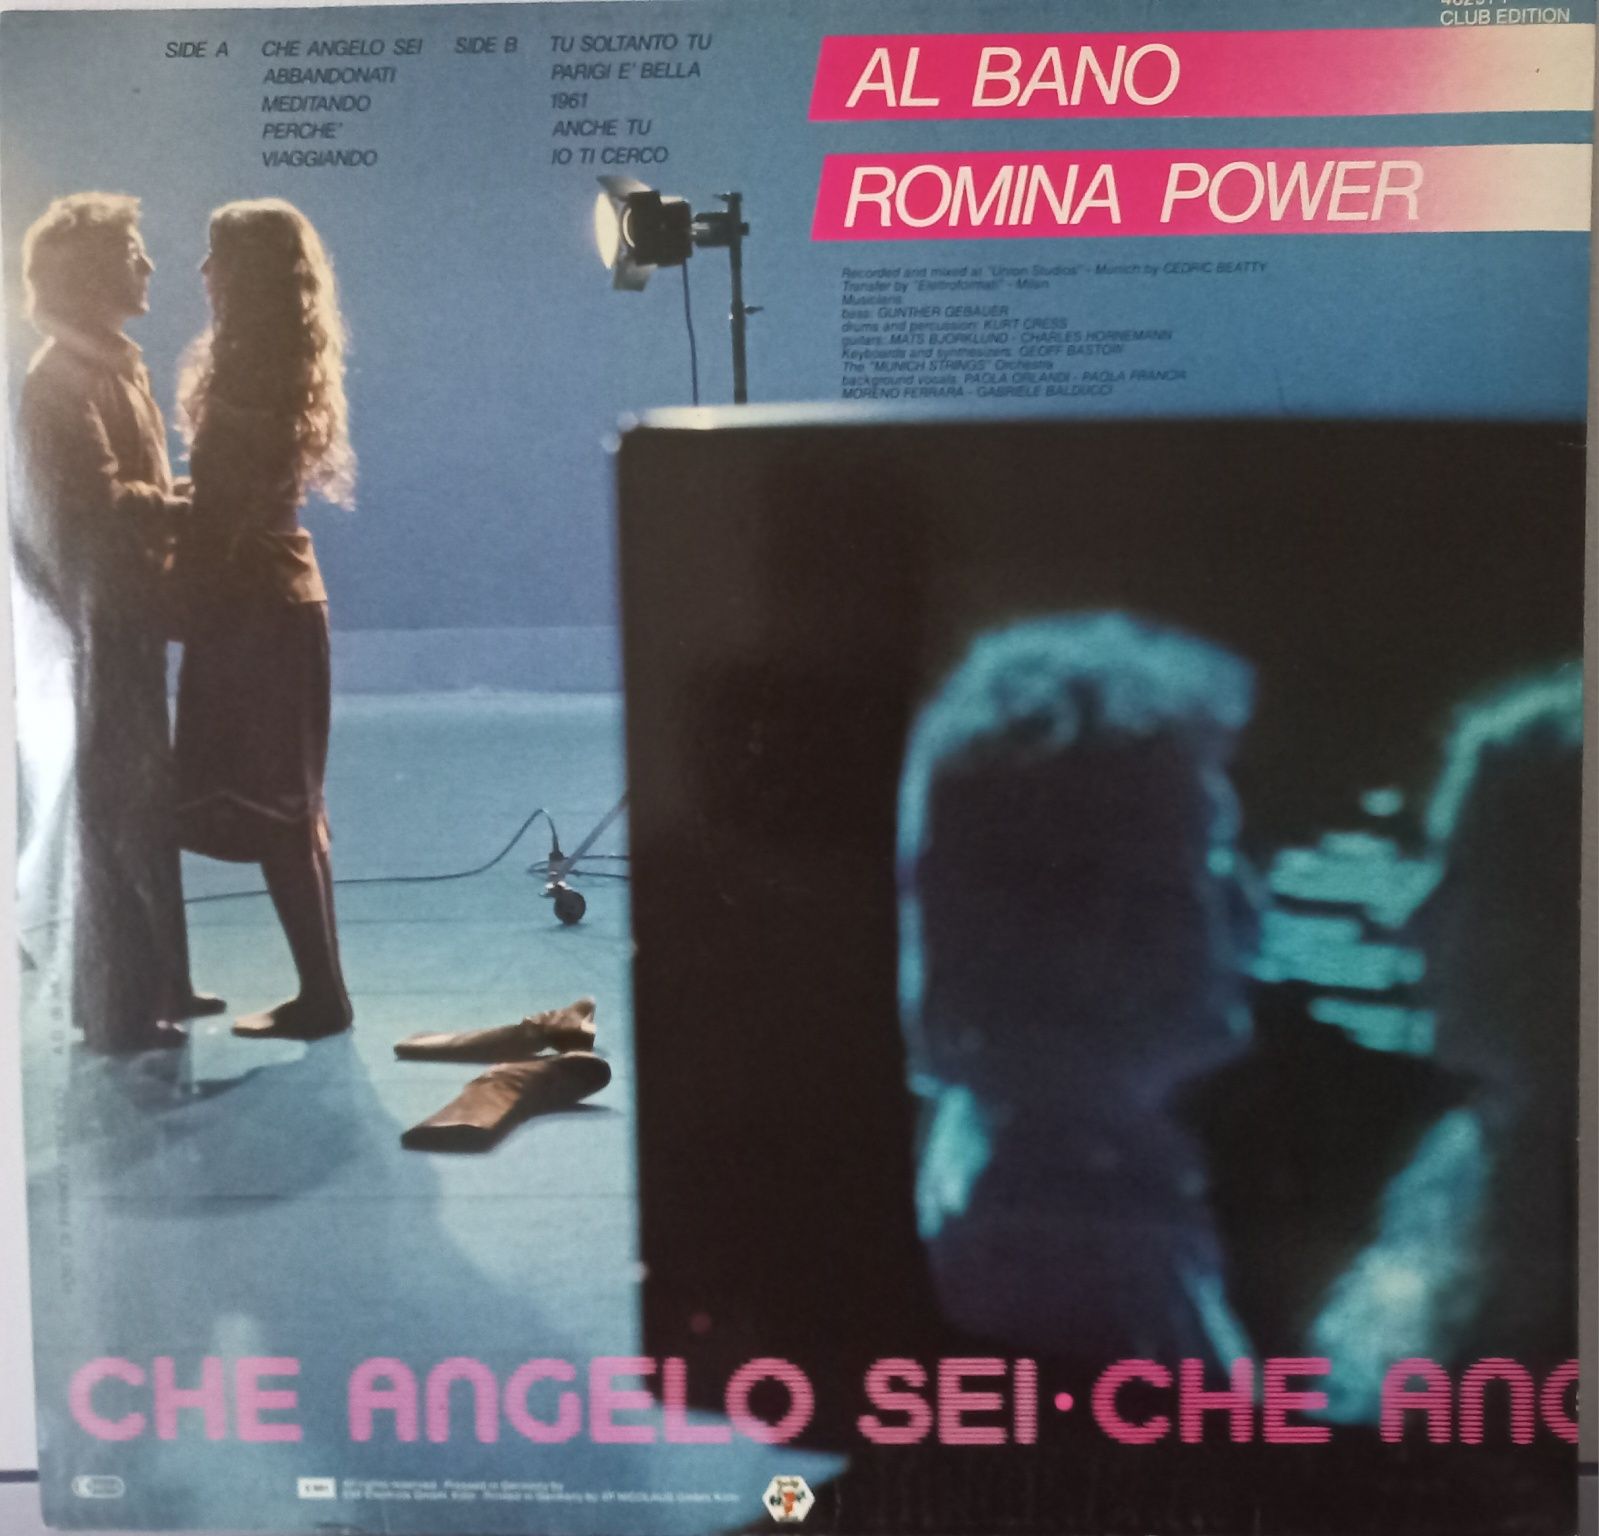 Al Bano & Romina Power LP winyl